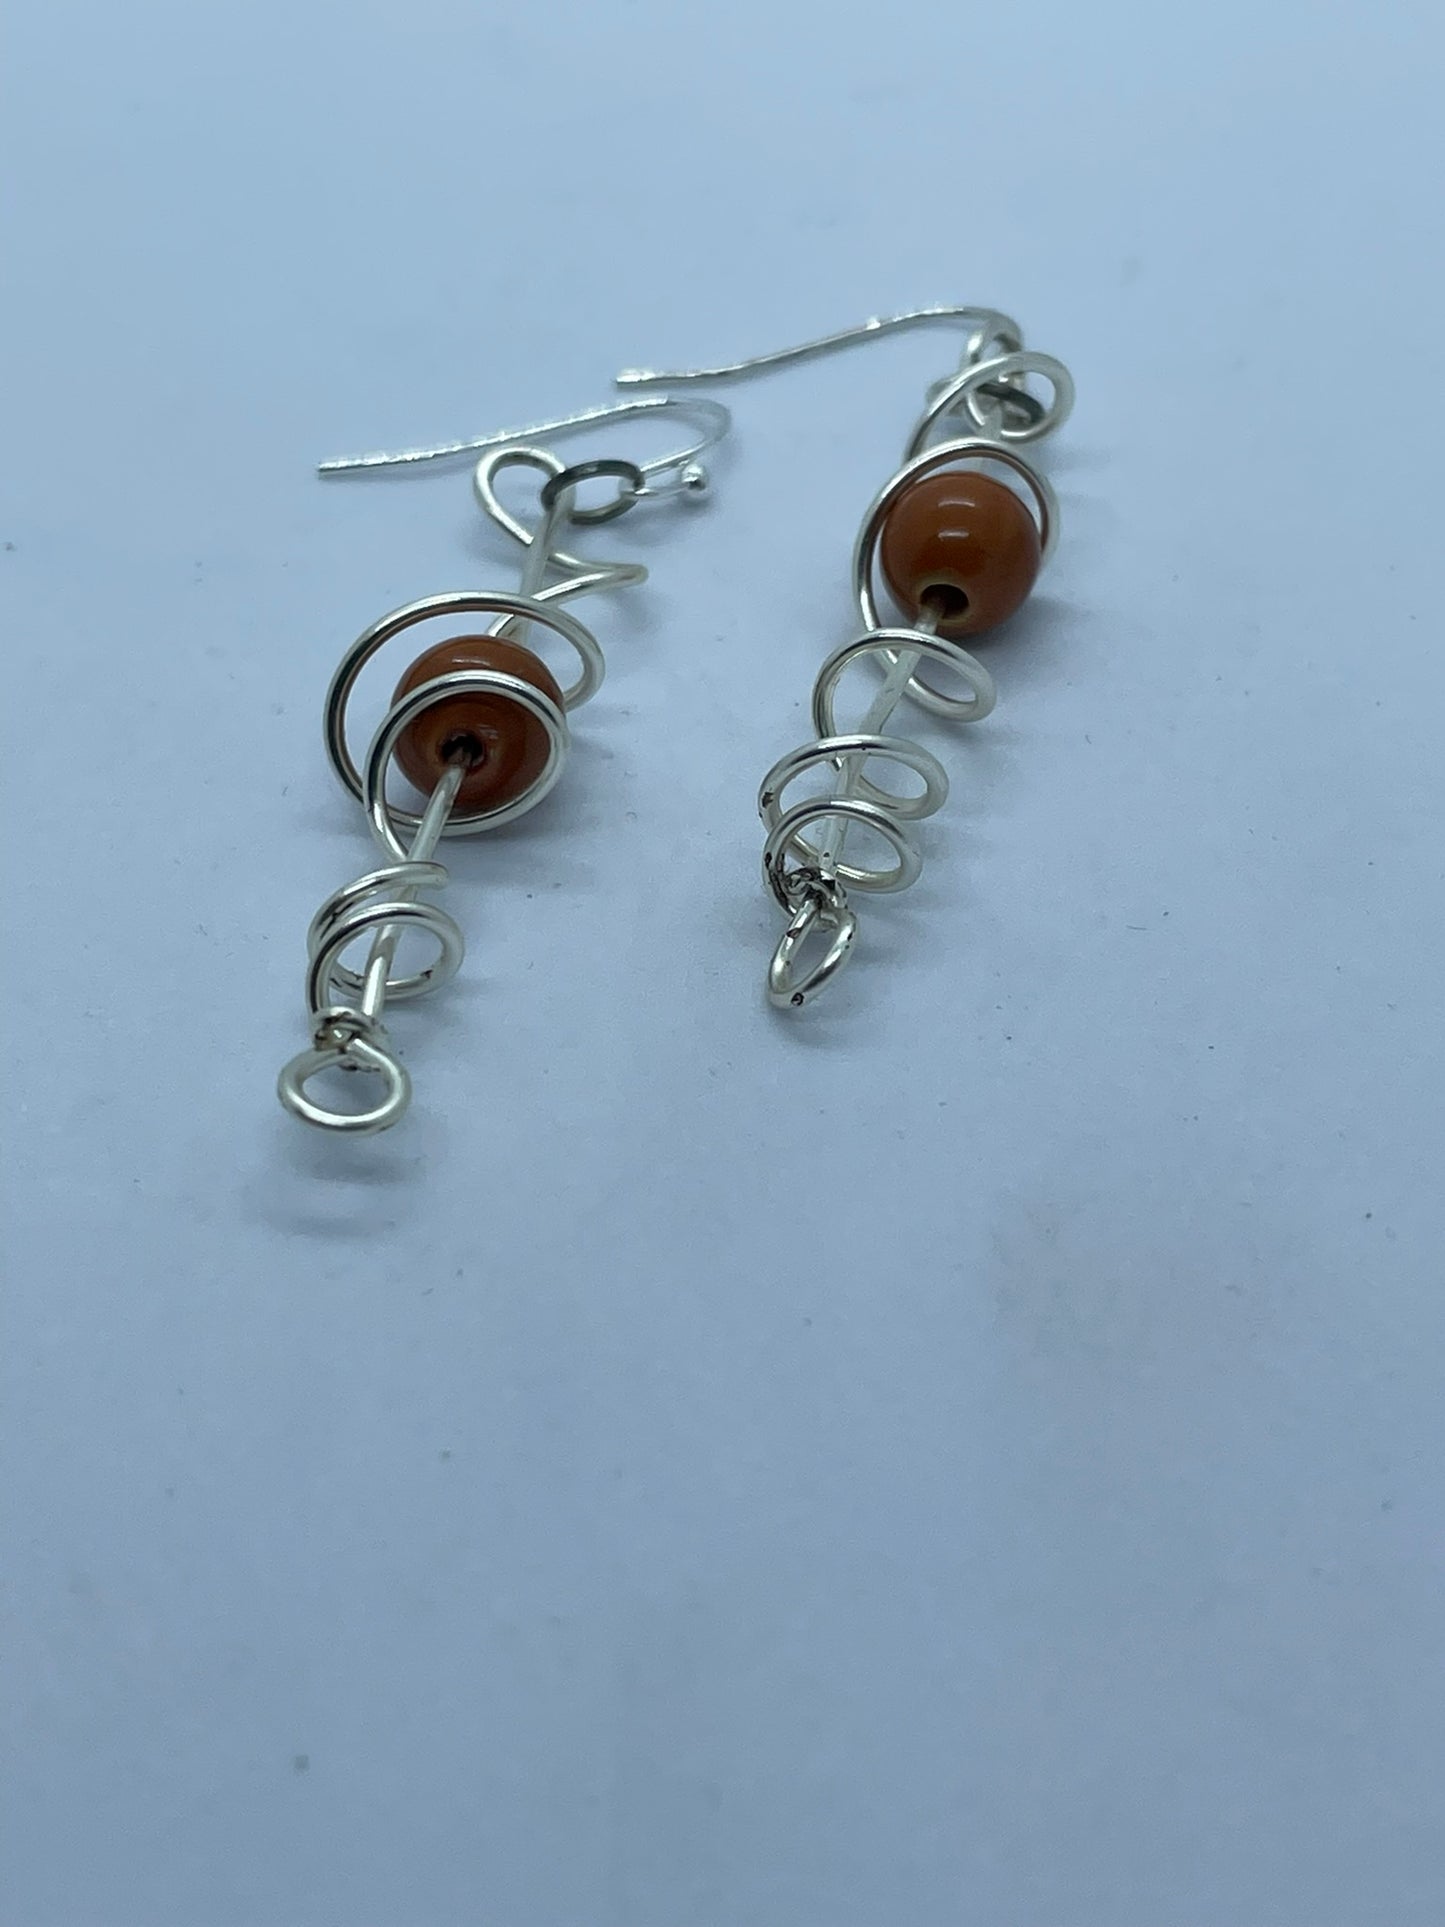 Wire & orange bead earrings